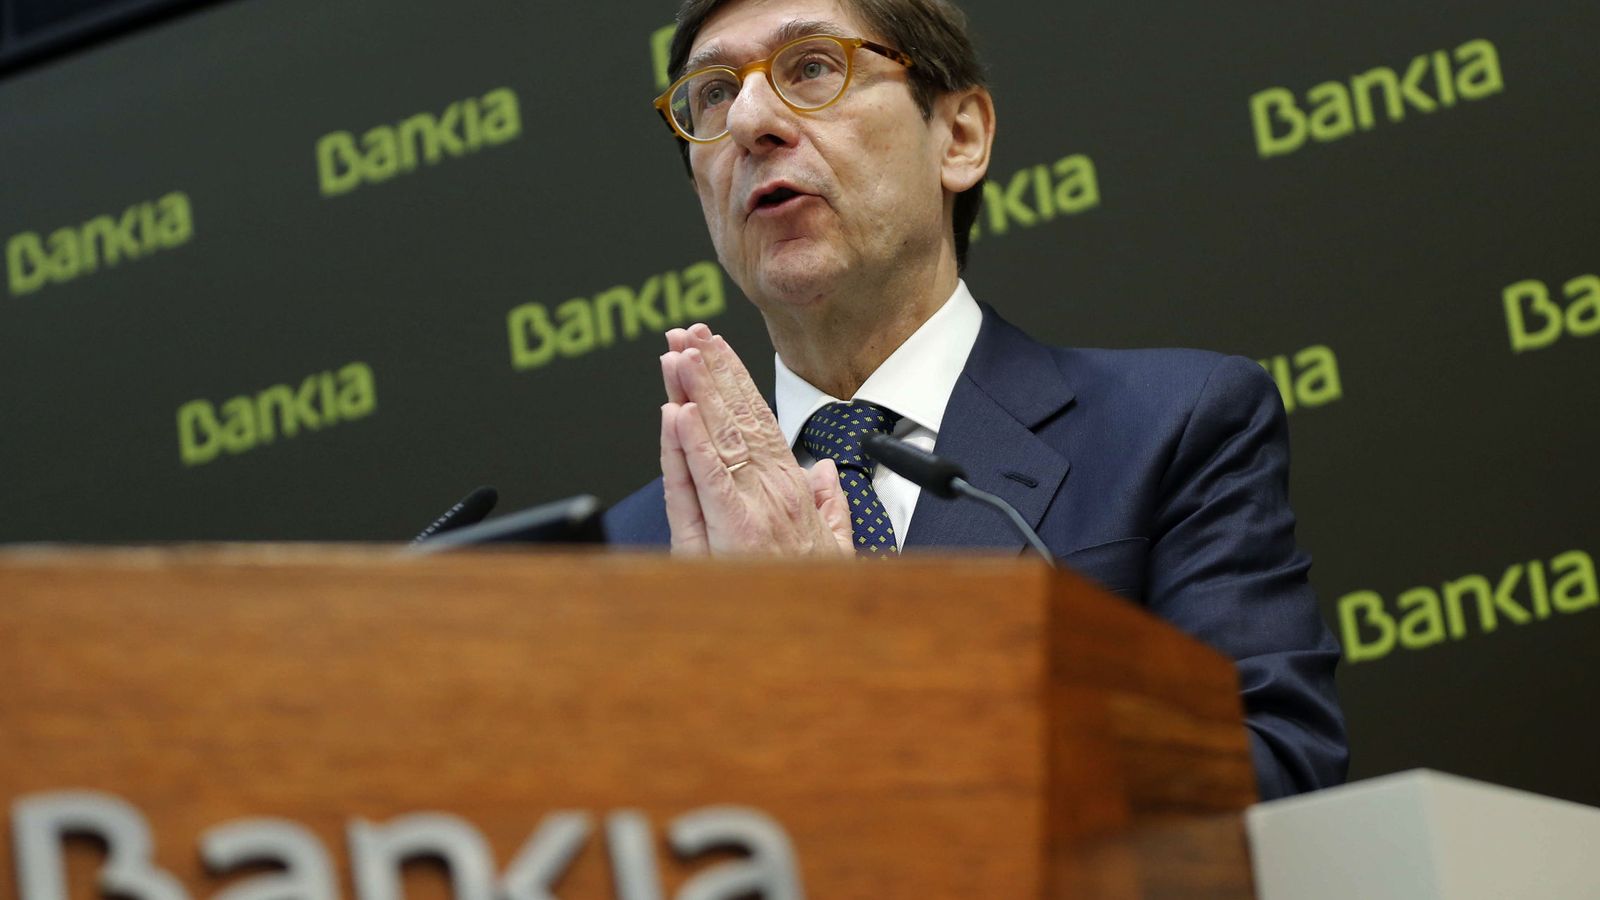 Foto: El presidente de Bankia, José Ignacio Goirigolzarri, durante la presentación de la nueva estrategia comercial de Bankia. (EFE)